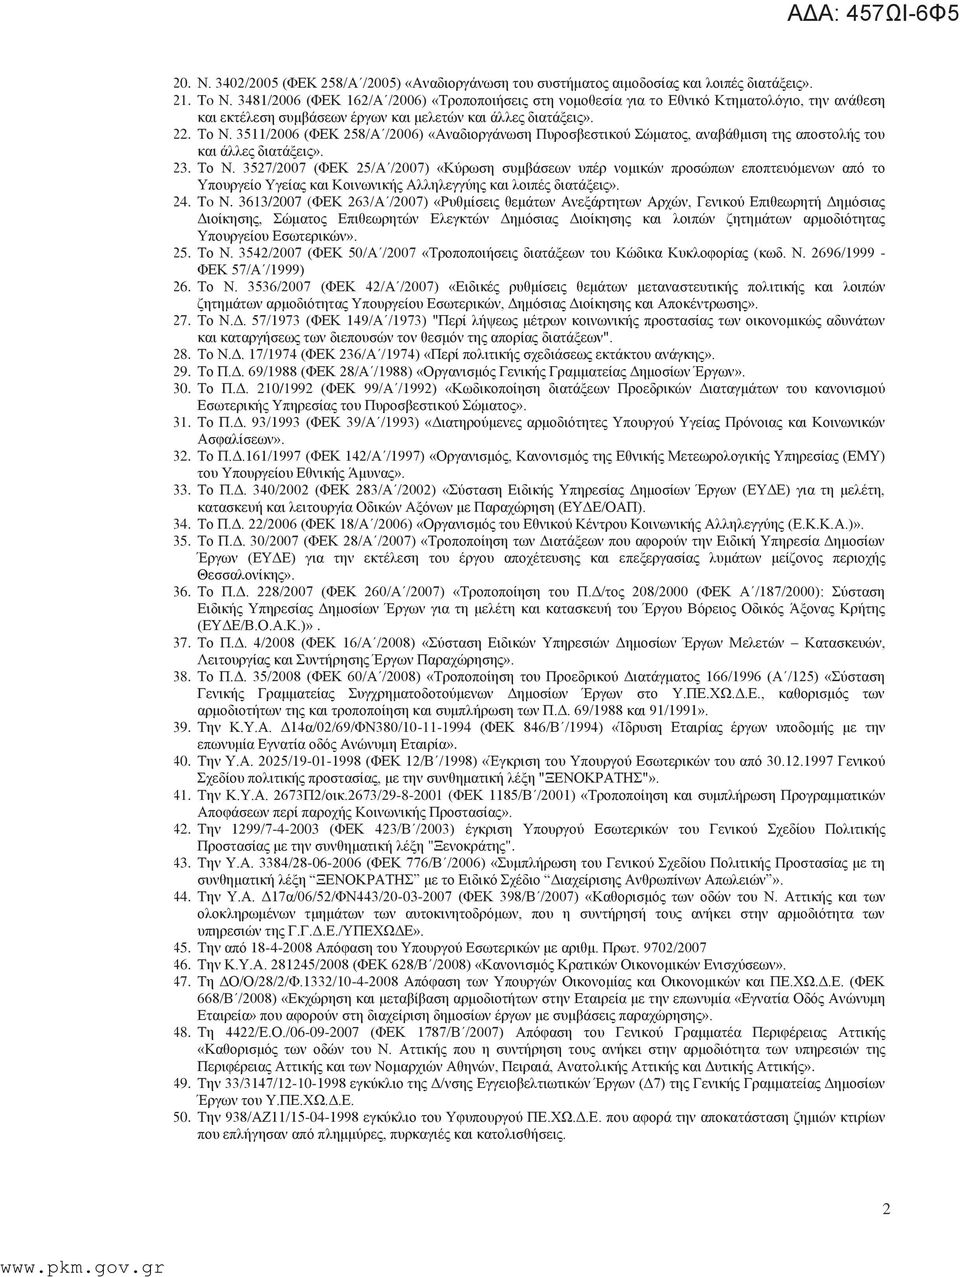 3511/2006 (ΦΕΚ 258/Α /2006) «Αναδιοργάνωση Πυροσβεστικού Σώματος, αναβάθμιση της αποστολής του και άλλες διατάξεις». 23. Το Ν.